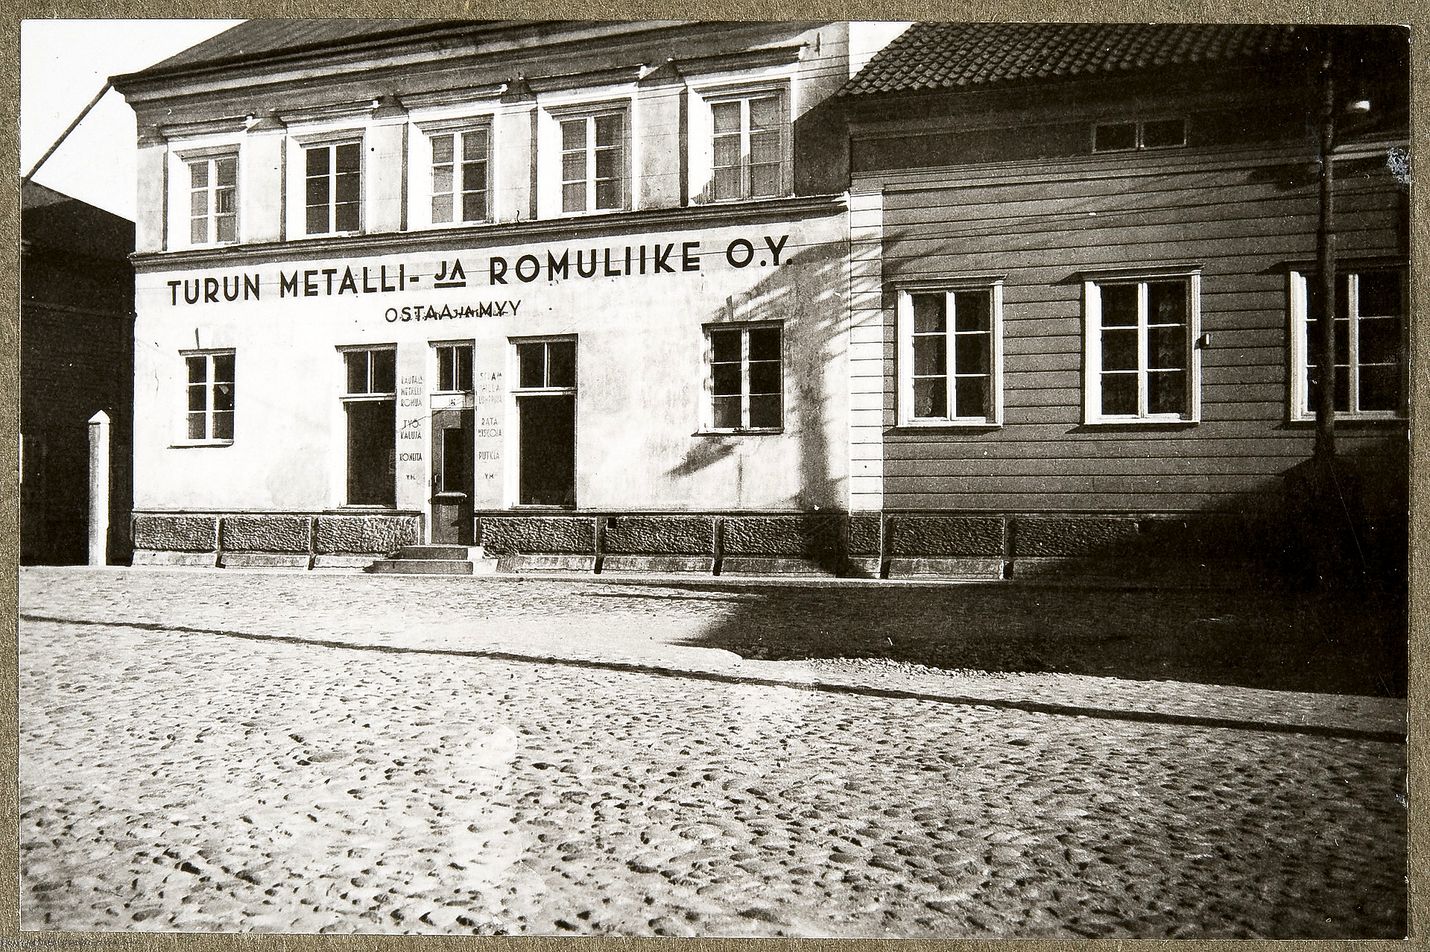 1940-luvulla kuvatun Pinnalan kivirakennuksen julkisivuun on maalattu Turun metalli ja romuliike Oy. Talossa on toiminut myös lasi-, kehys- ja huonekalukauppa. 